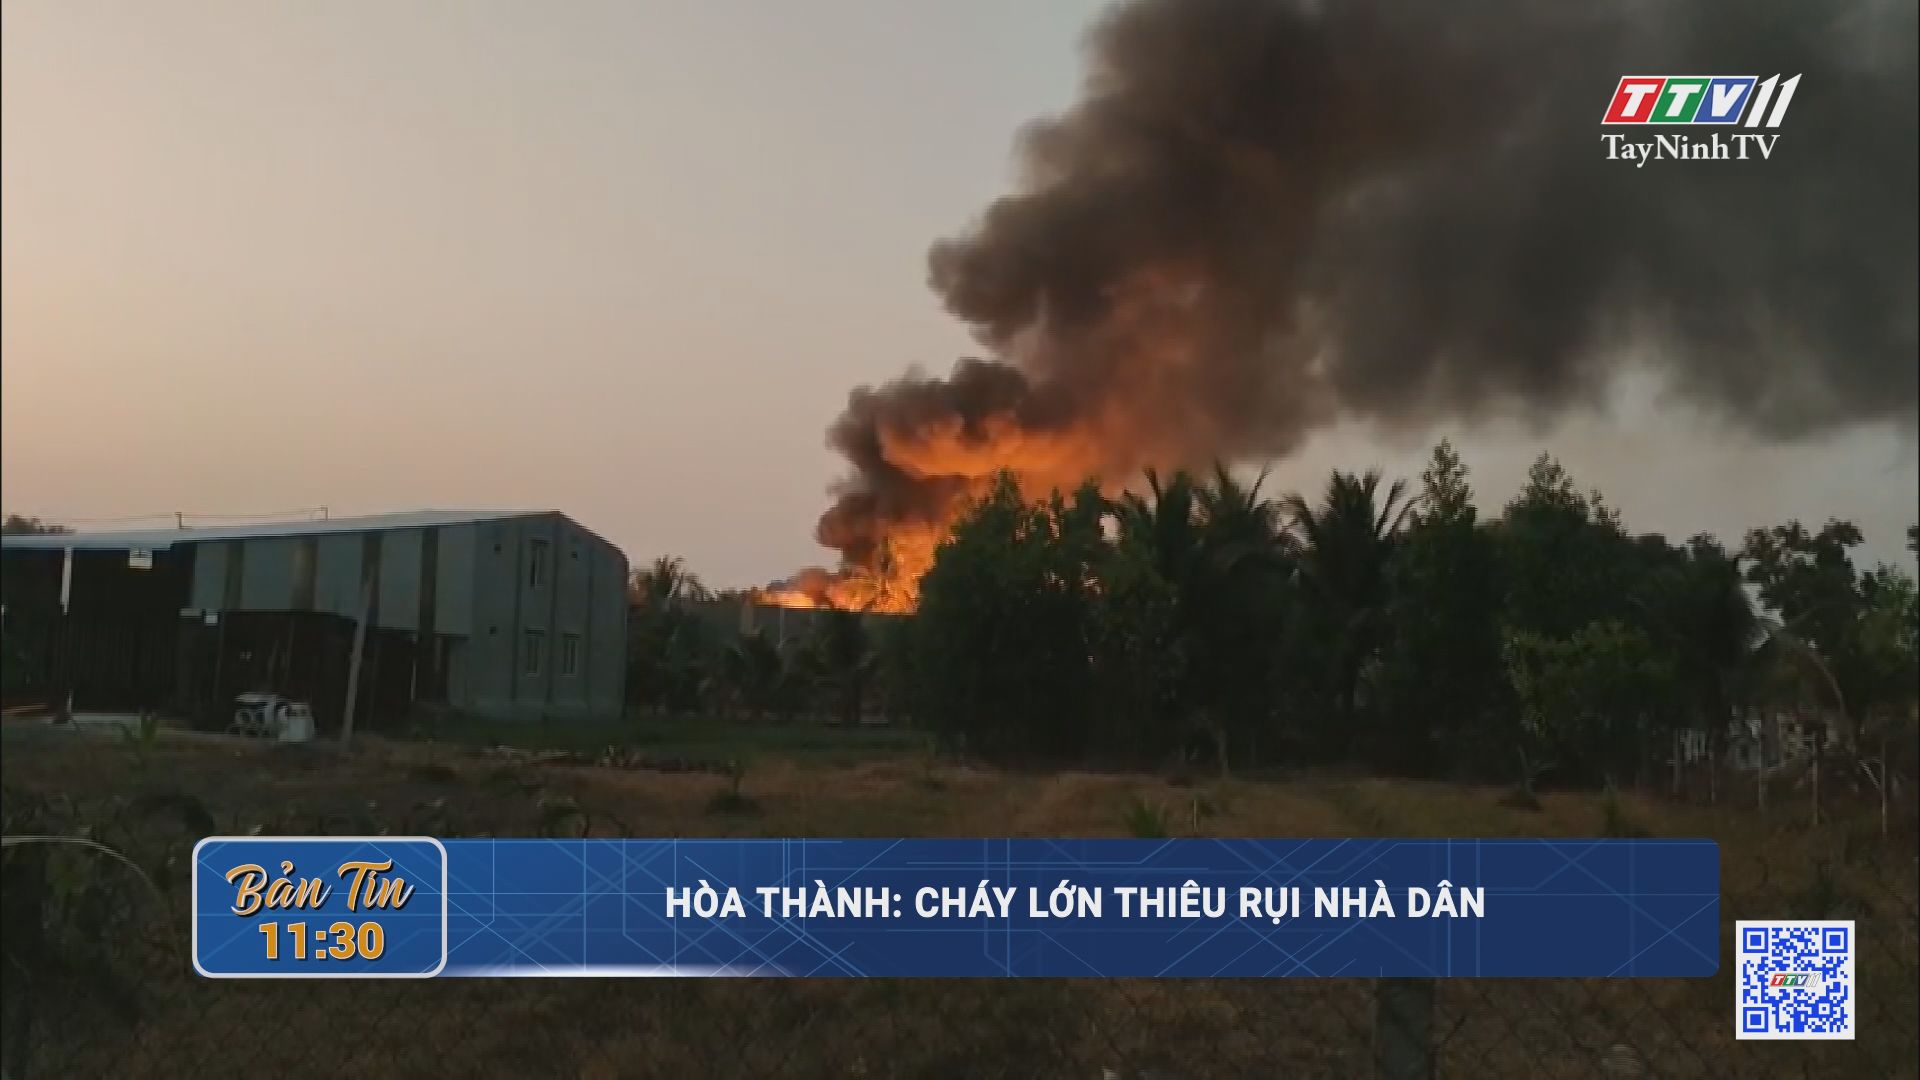 Hòa Thành: cháy lớn thiêu rụi nhà dân | TayNinhTV